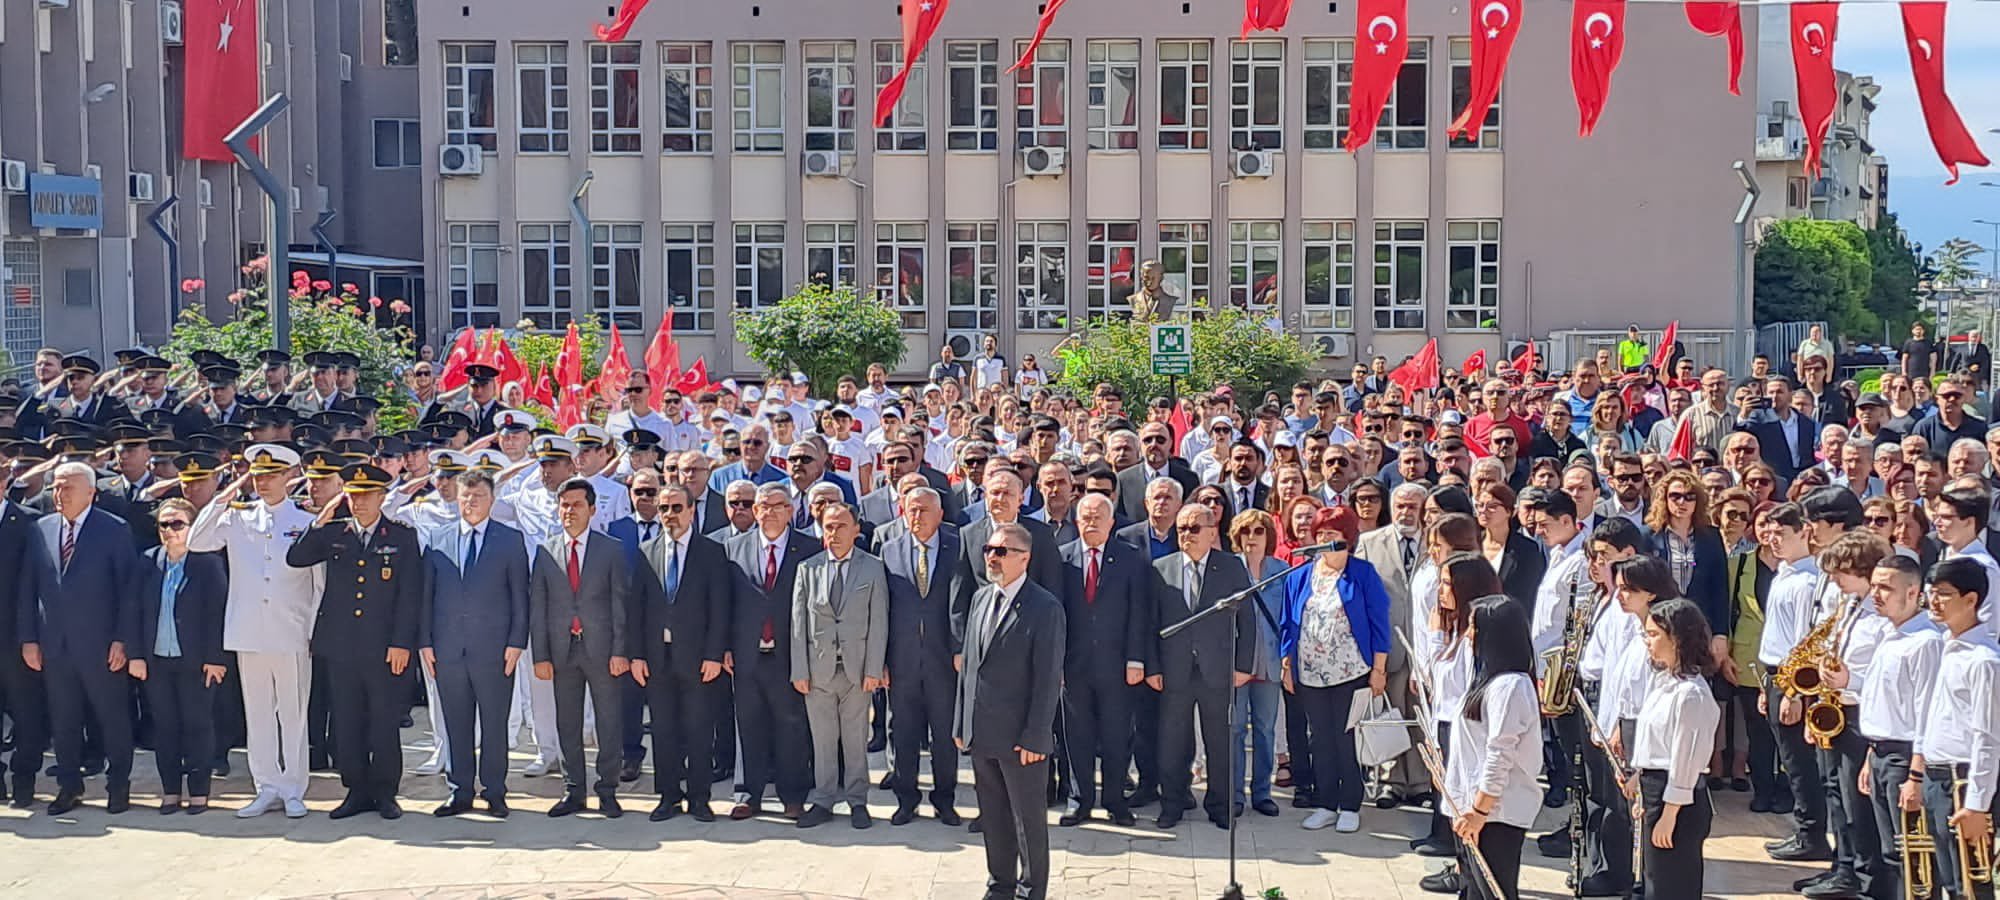 19 Mayıs Atatürk'ü Anma, Gençlik ve Spor Bayramı kapsamında Aydın Valiliği önünde düzenlenen kutlama törenine Odamız Meclis Başkan Yardımcısı Semih ÇAKIR katılım sağladı.